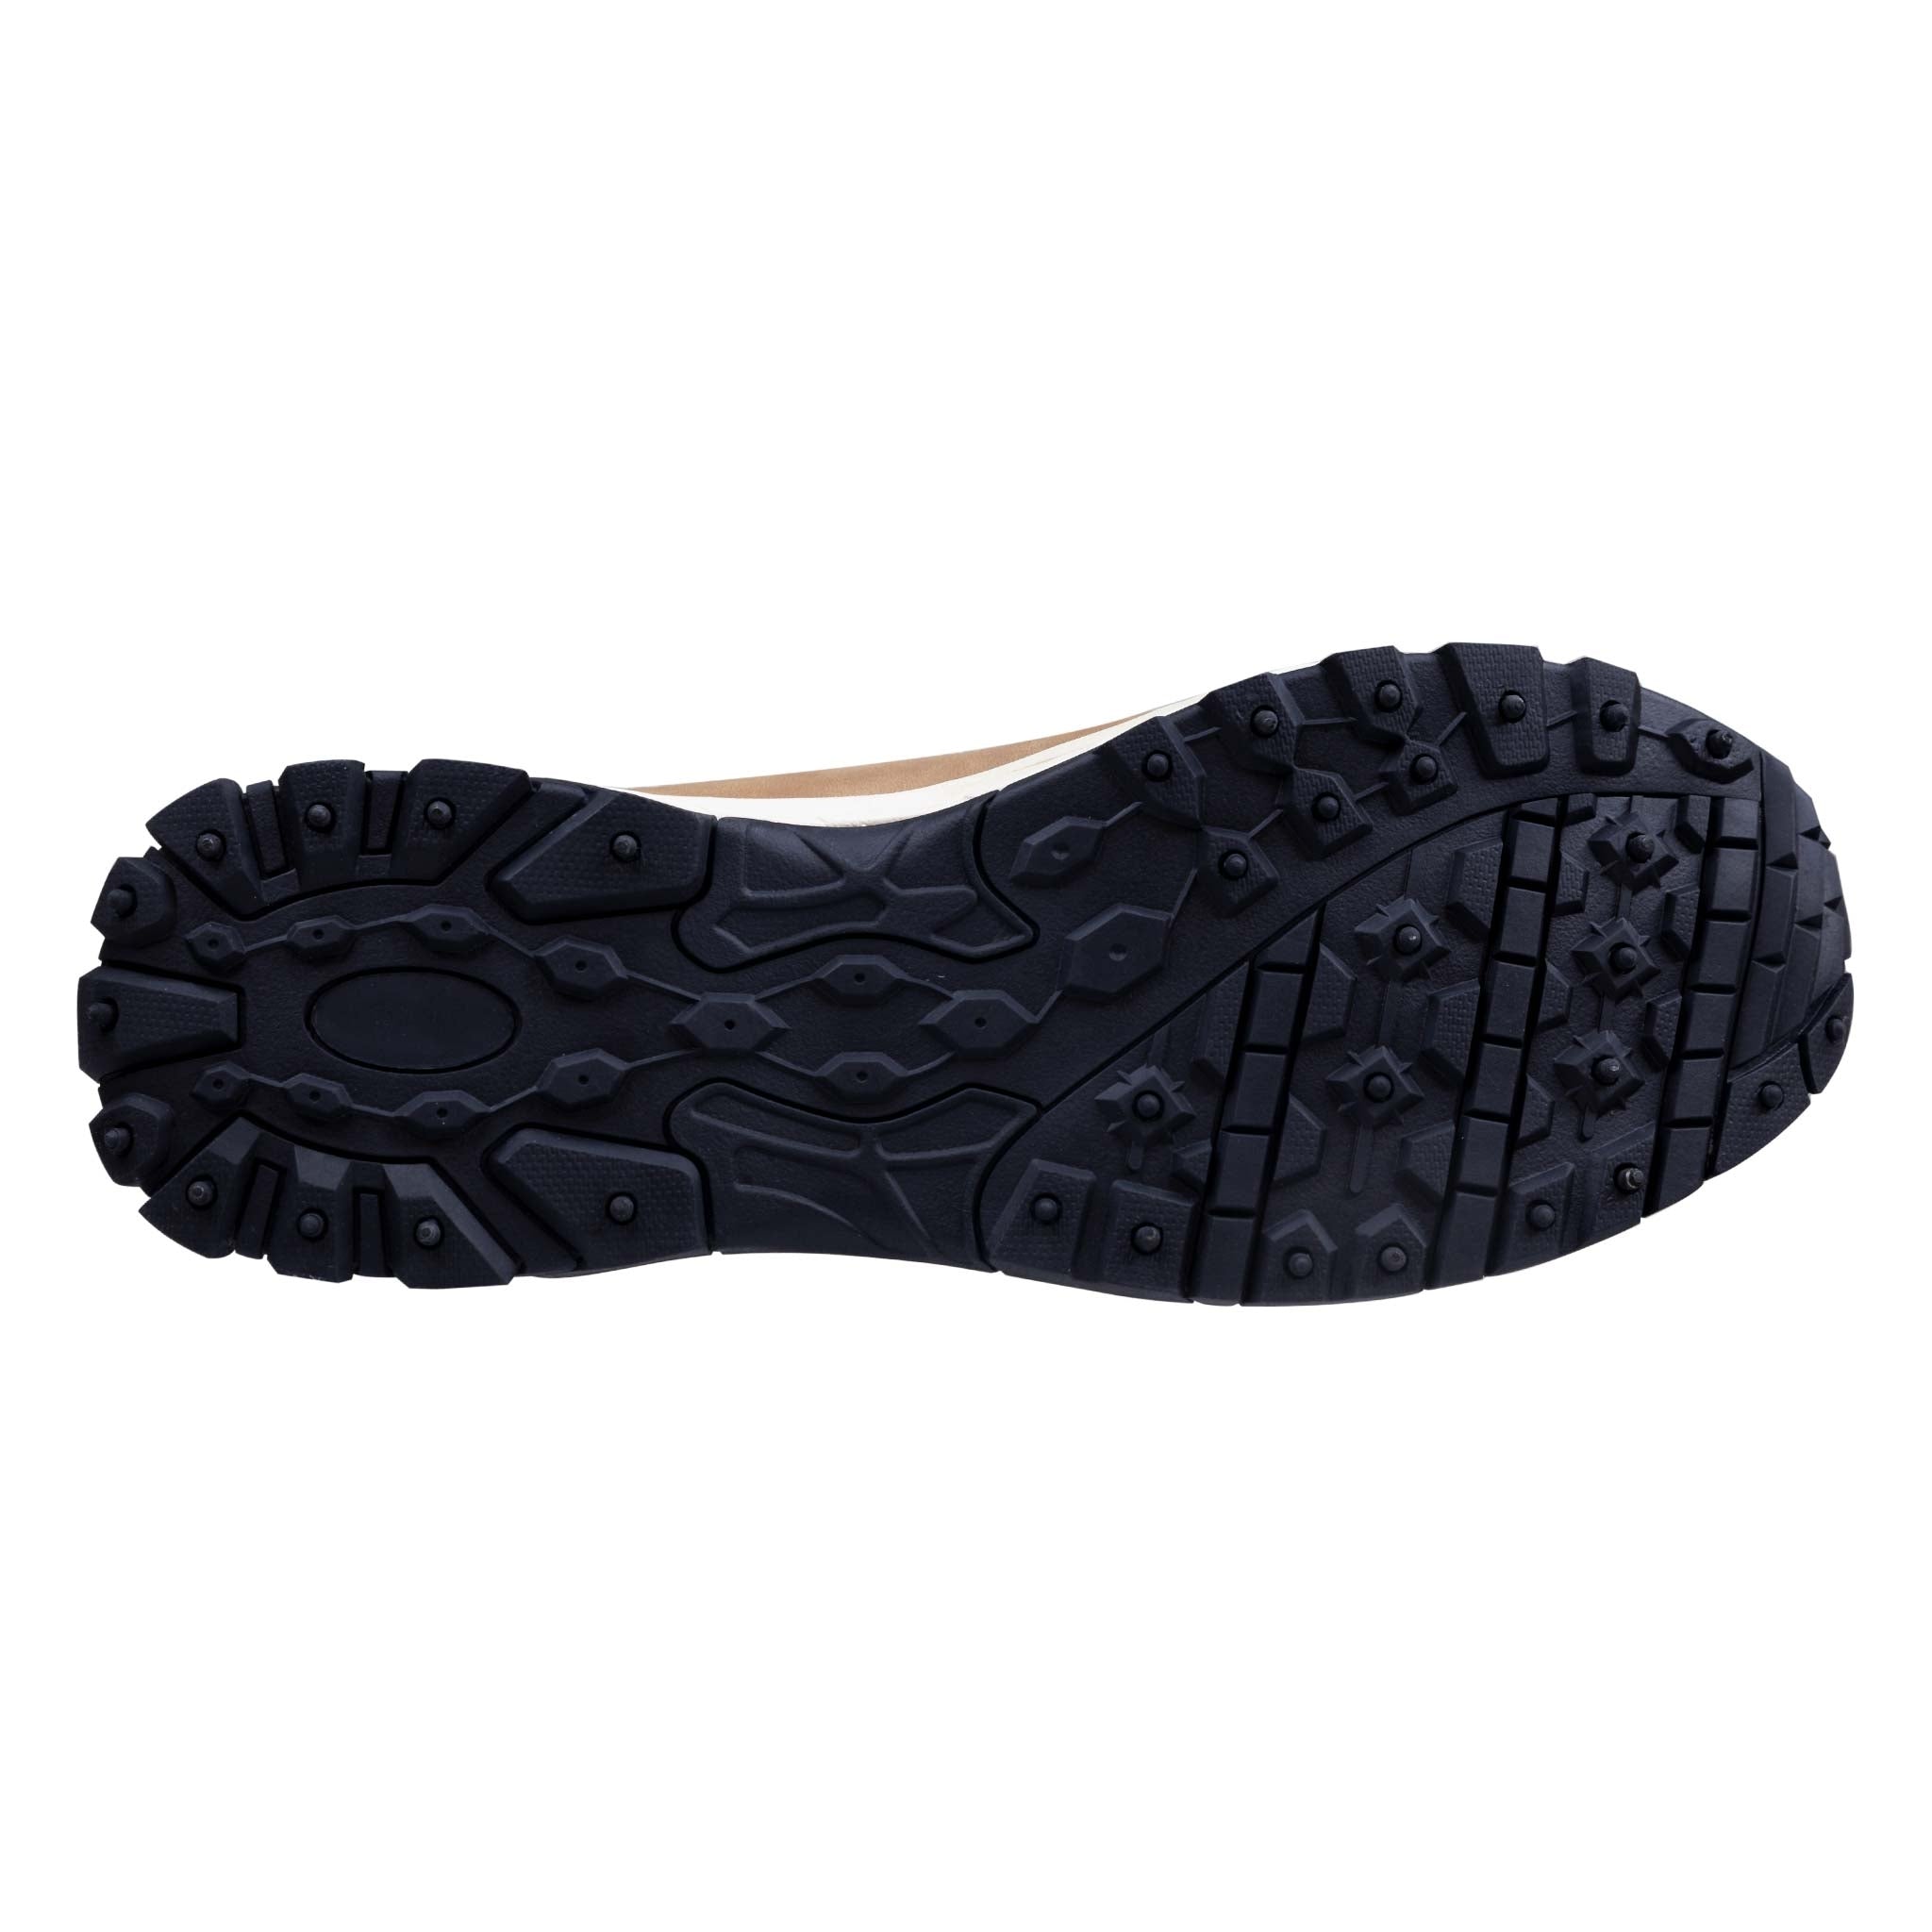 Trekker zapatillas minimalistas, tallas 36-45 - 49,90 EUR - Nordic ProStore